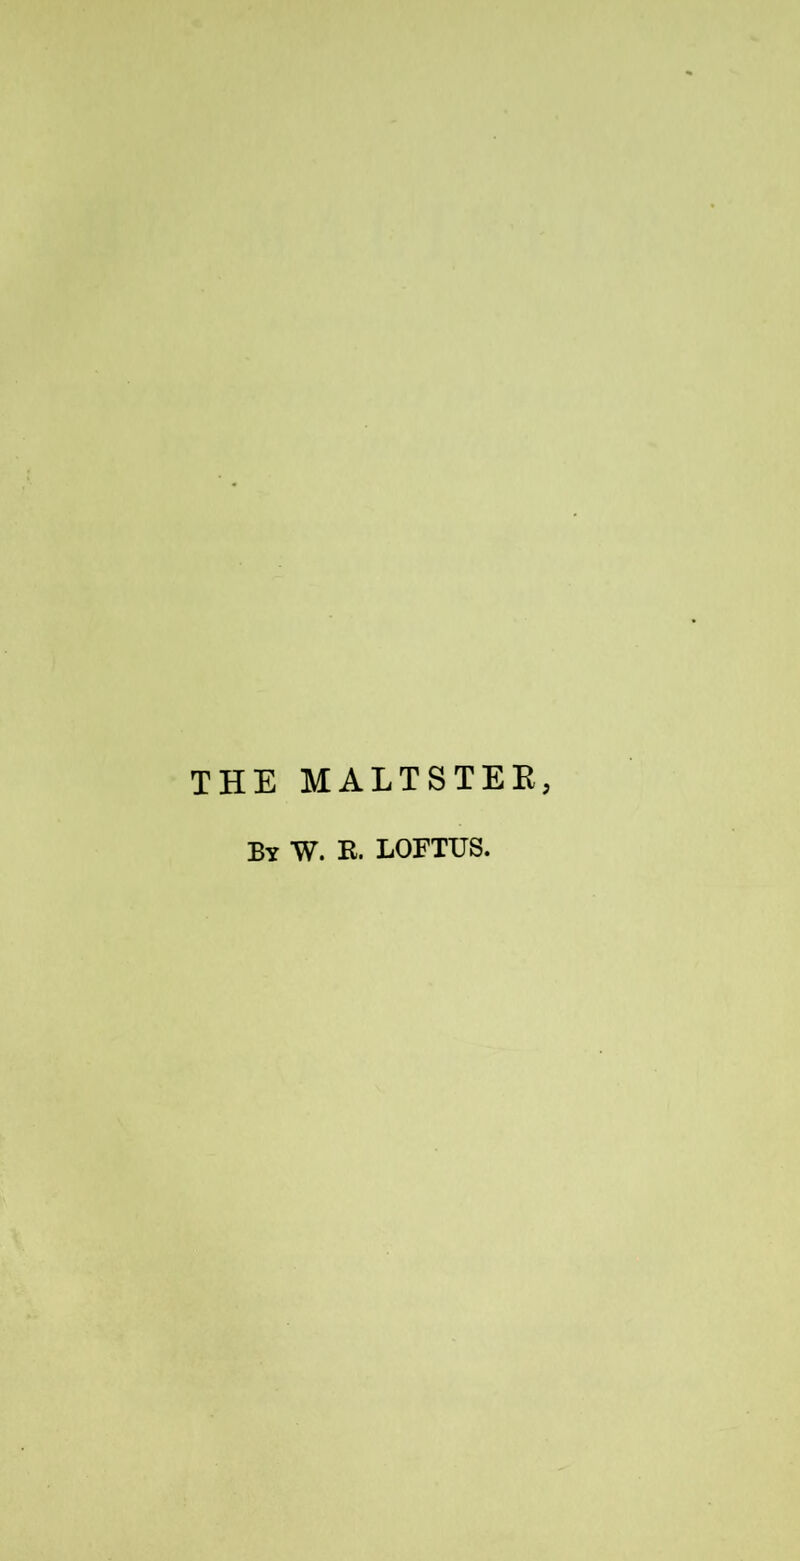 THE MALTSTER, By W. E. LOFTUS.